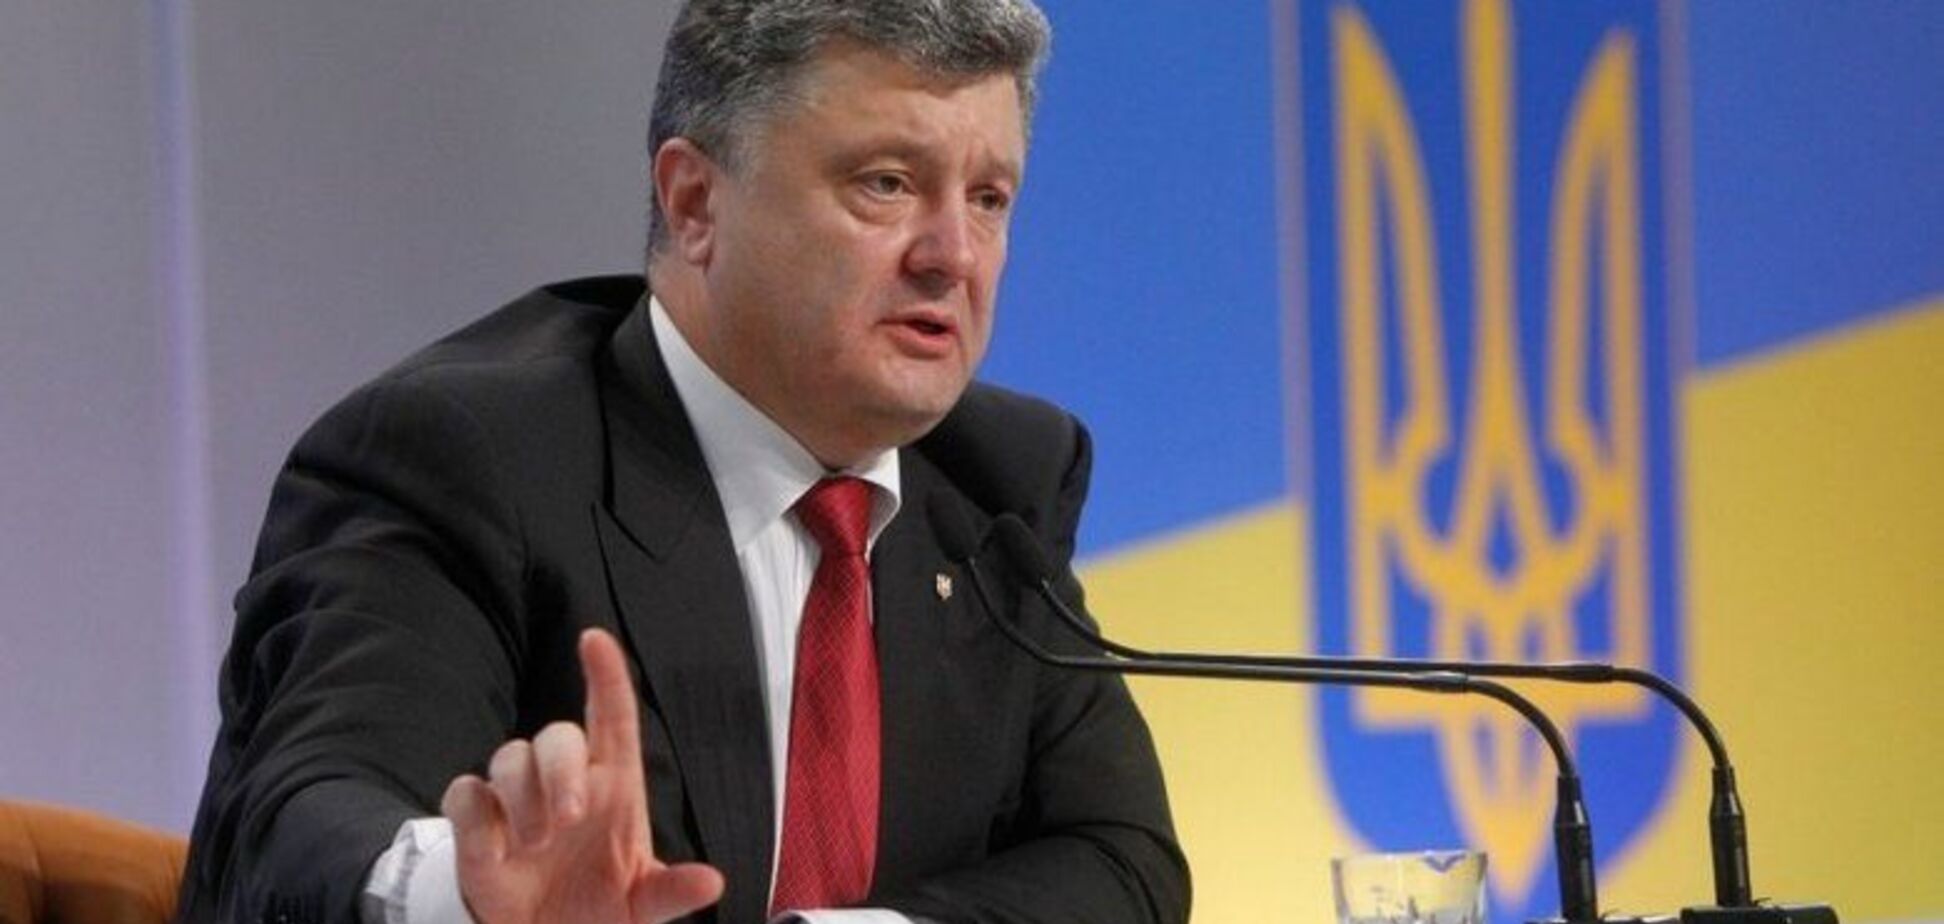 Величезна ціна: Порошенко розповів, чим поплатився Кремль за агресію в Україні